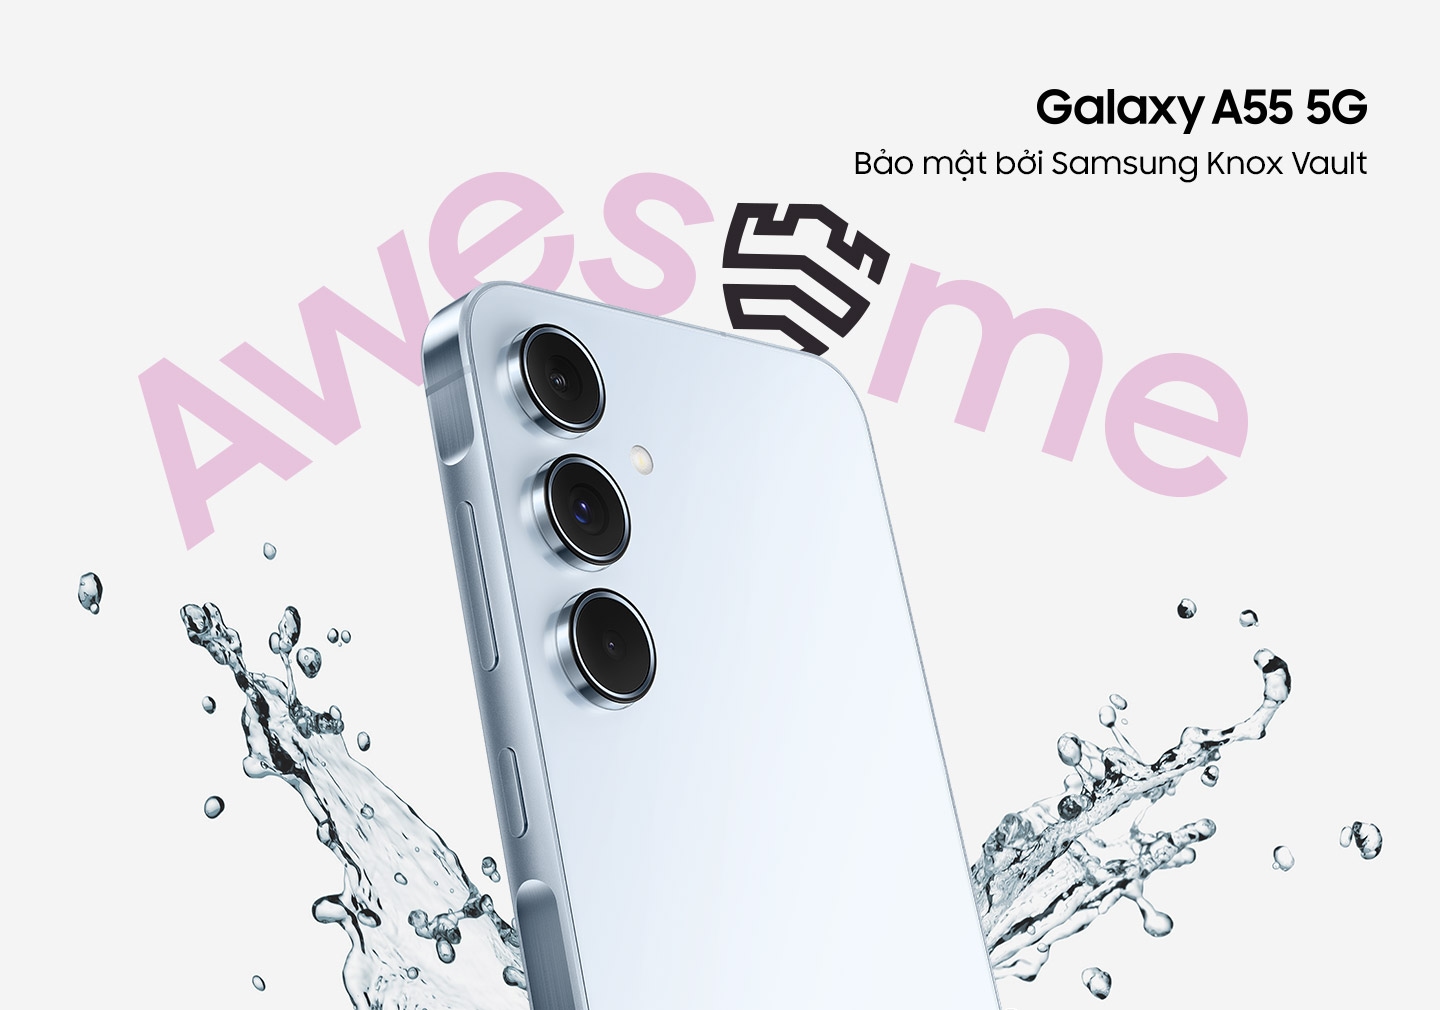 Một chiếc Galaxy A55 5G được hiển thị ở một góc với những vệt nước xung quanh kèm theo chữ 'TUYỆT VỜI'. Logo Galaxy A55 5G. Dòng chữ được bảo mật bởi Samsung Knox Vault.